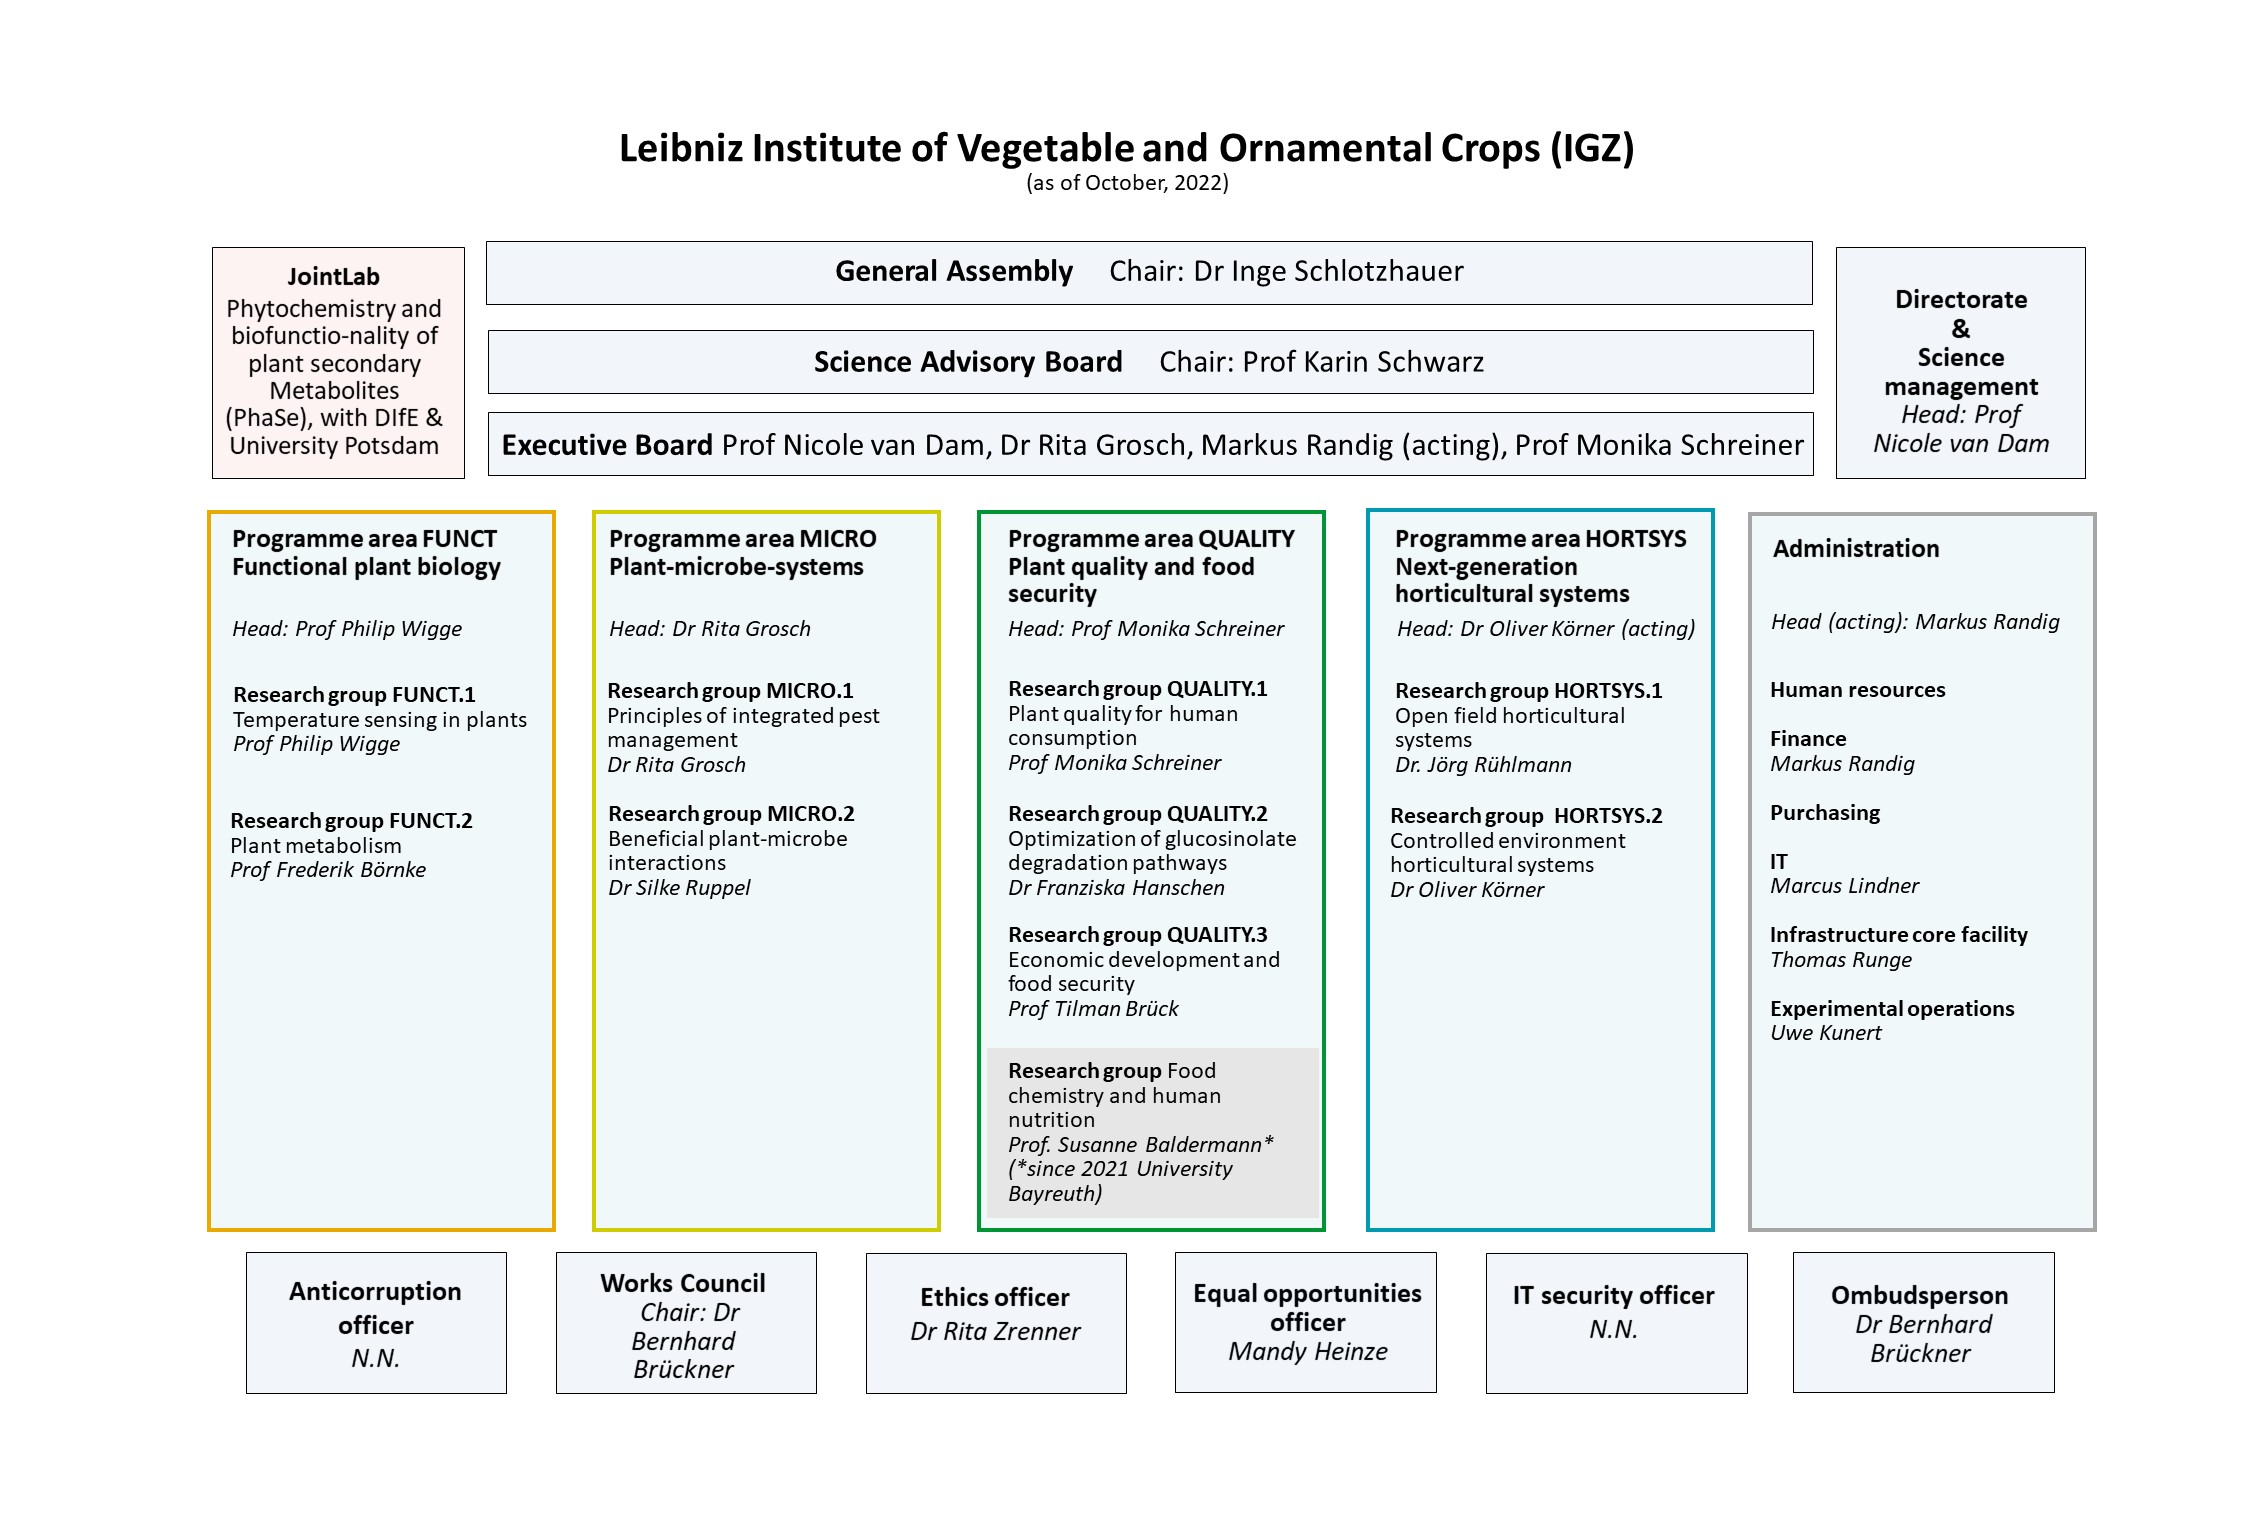 IGZ Organizational chart